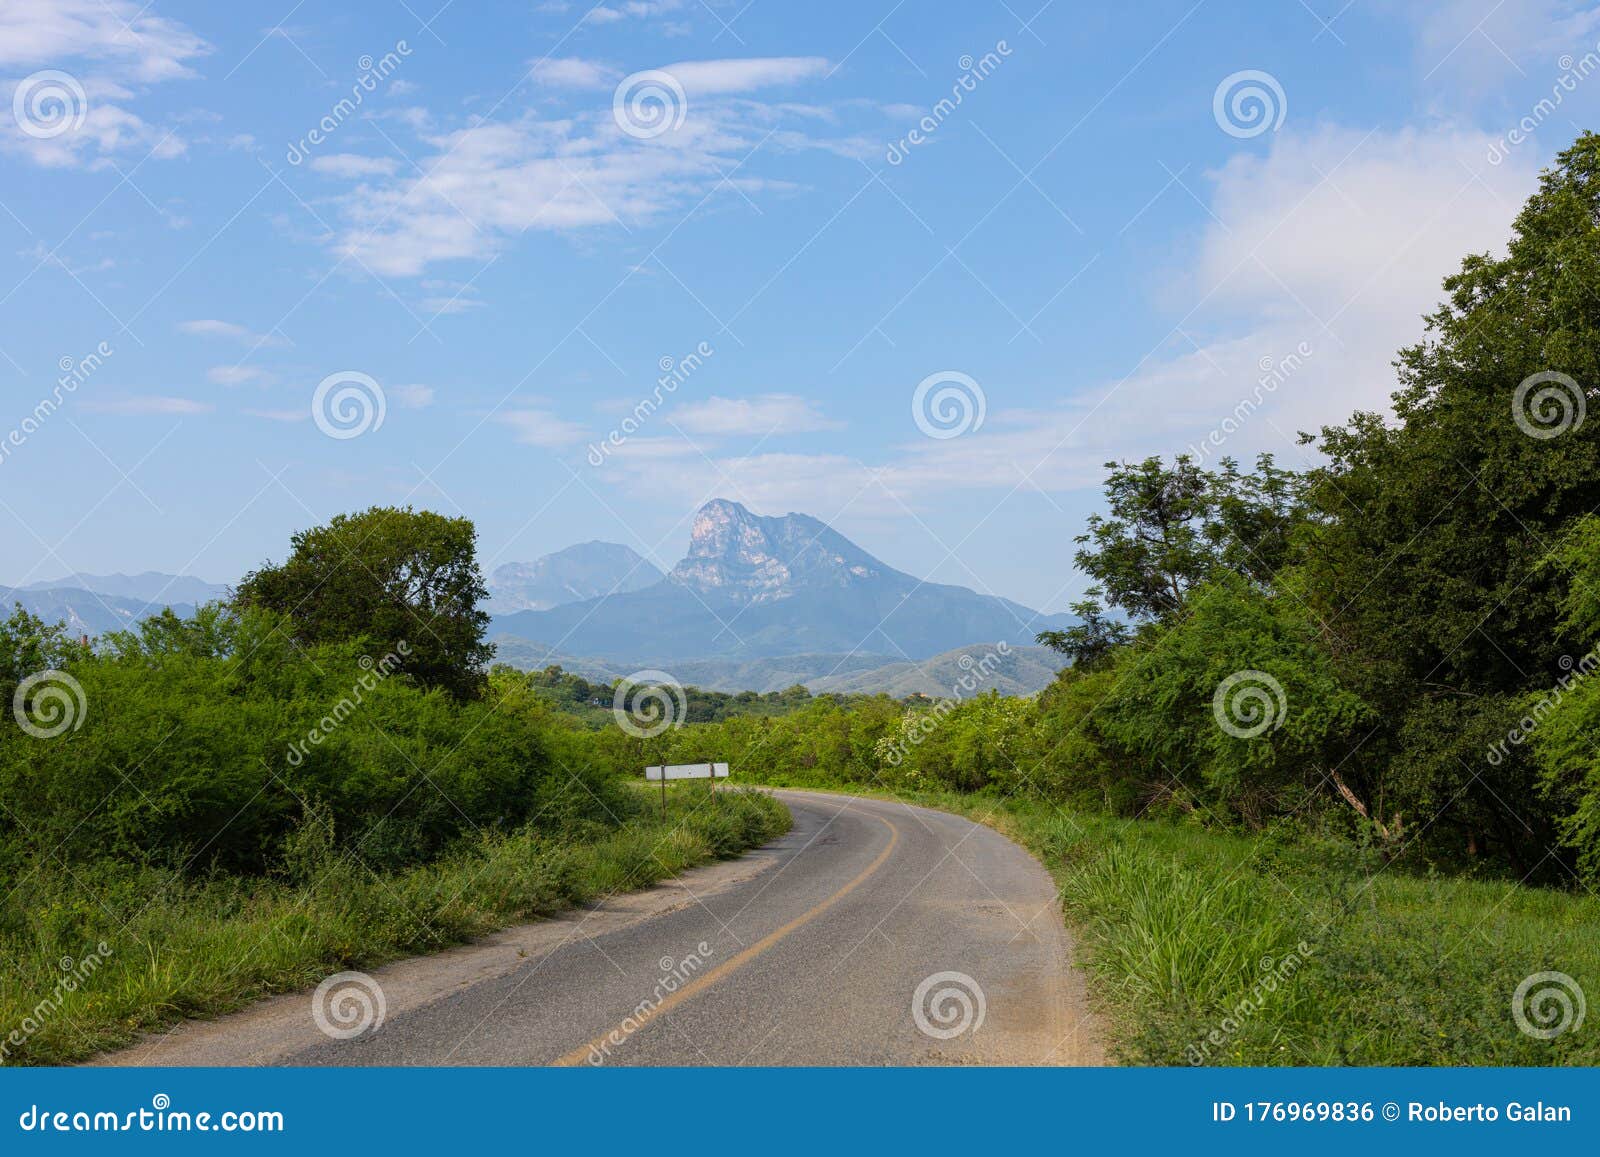 tamaulipas landscapes